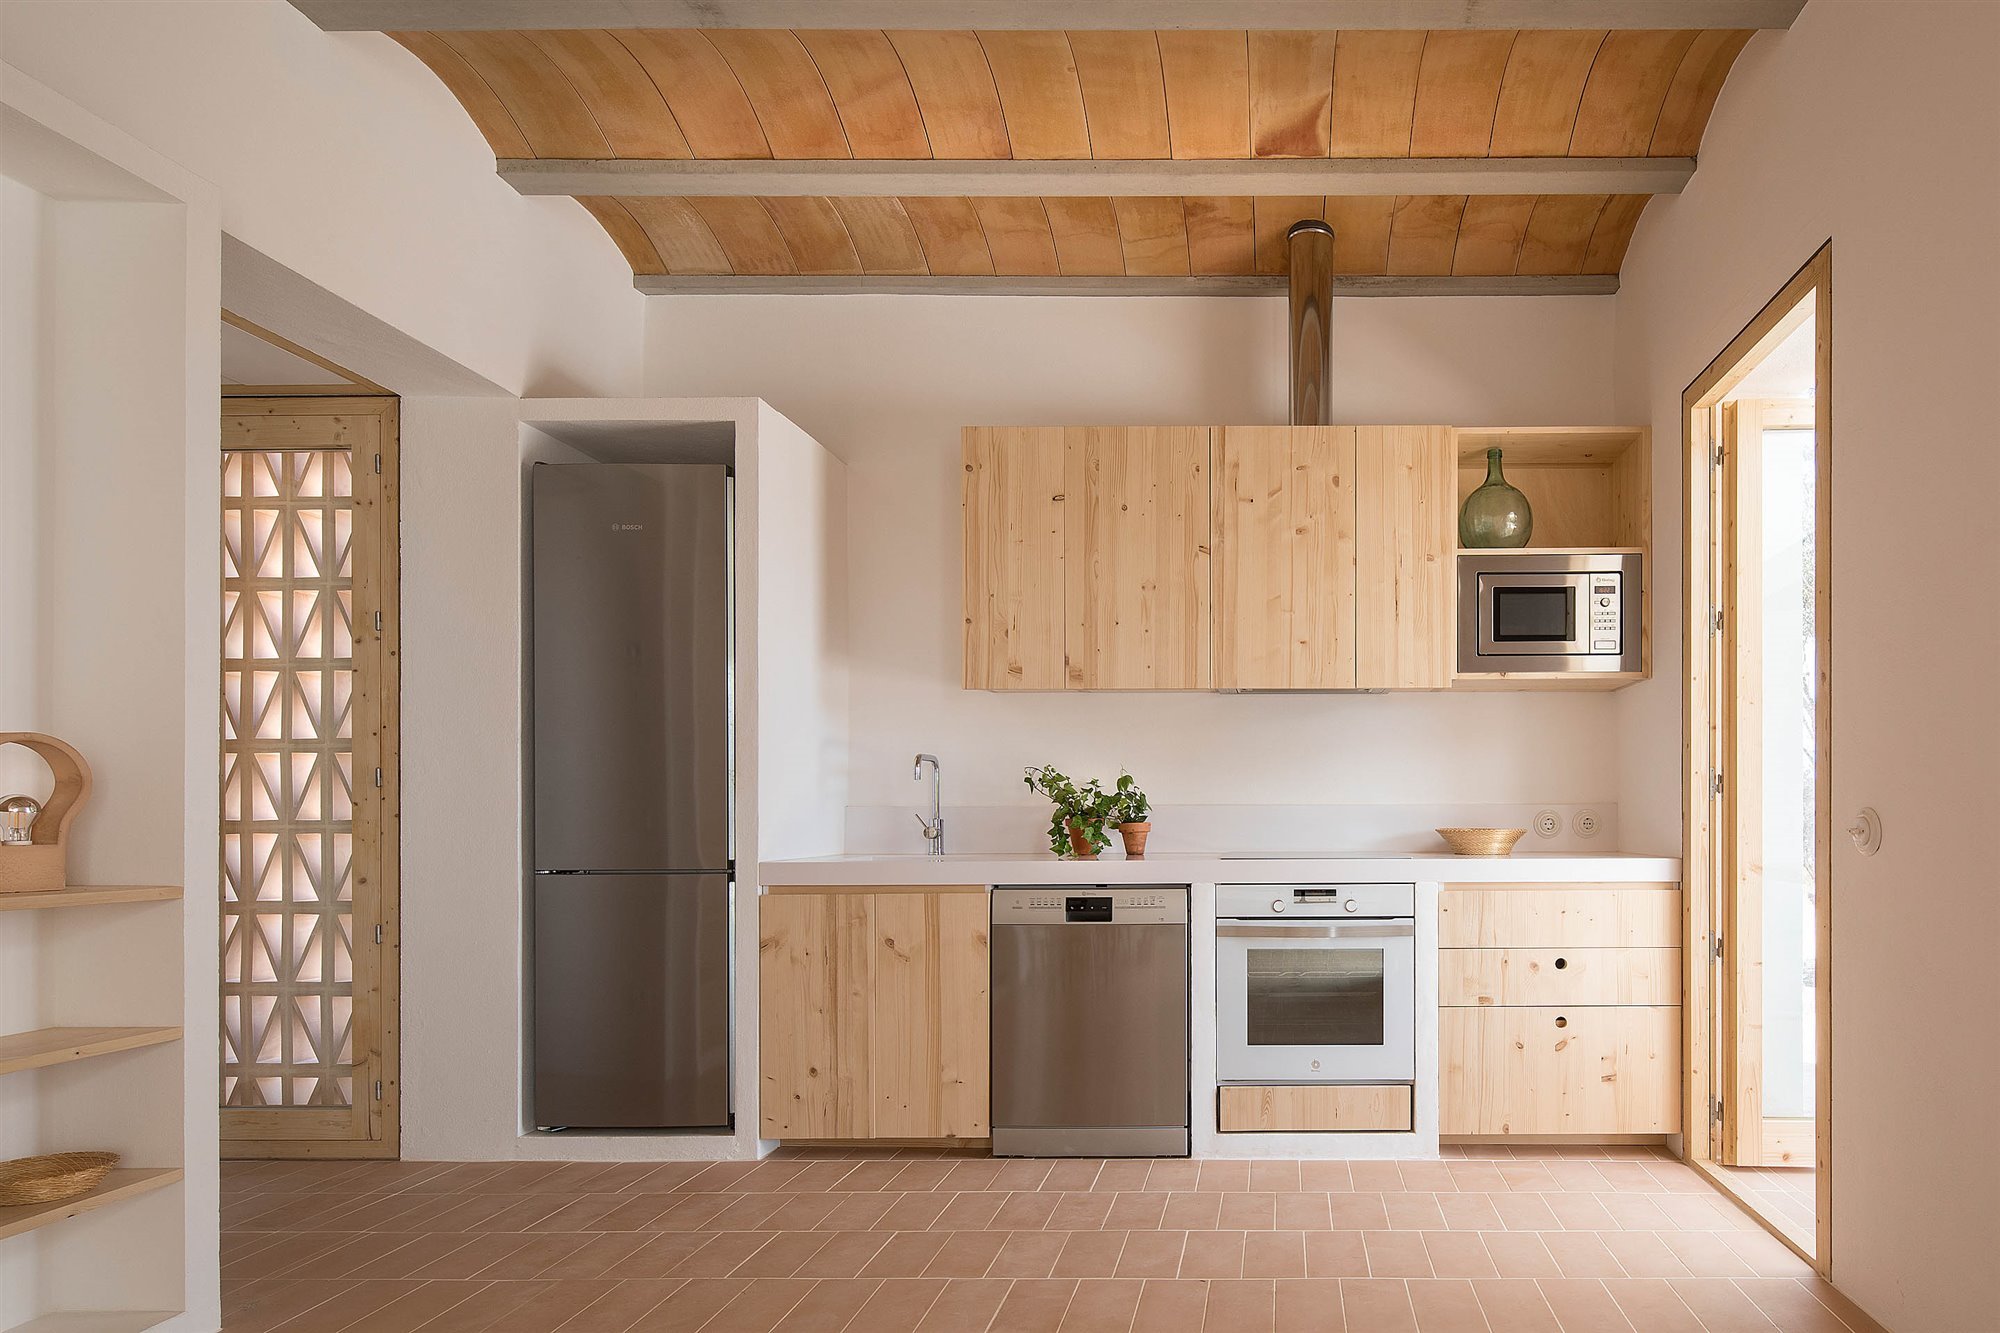 Casa blanca en Formentera del arquitecto Maria Castello cocina con muebles de madera